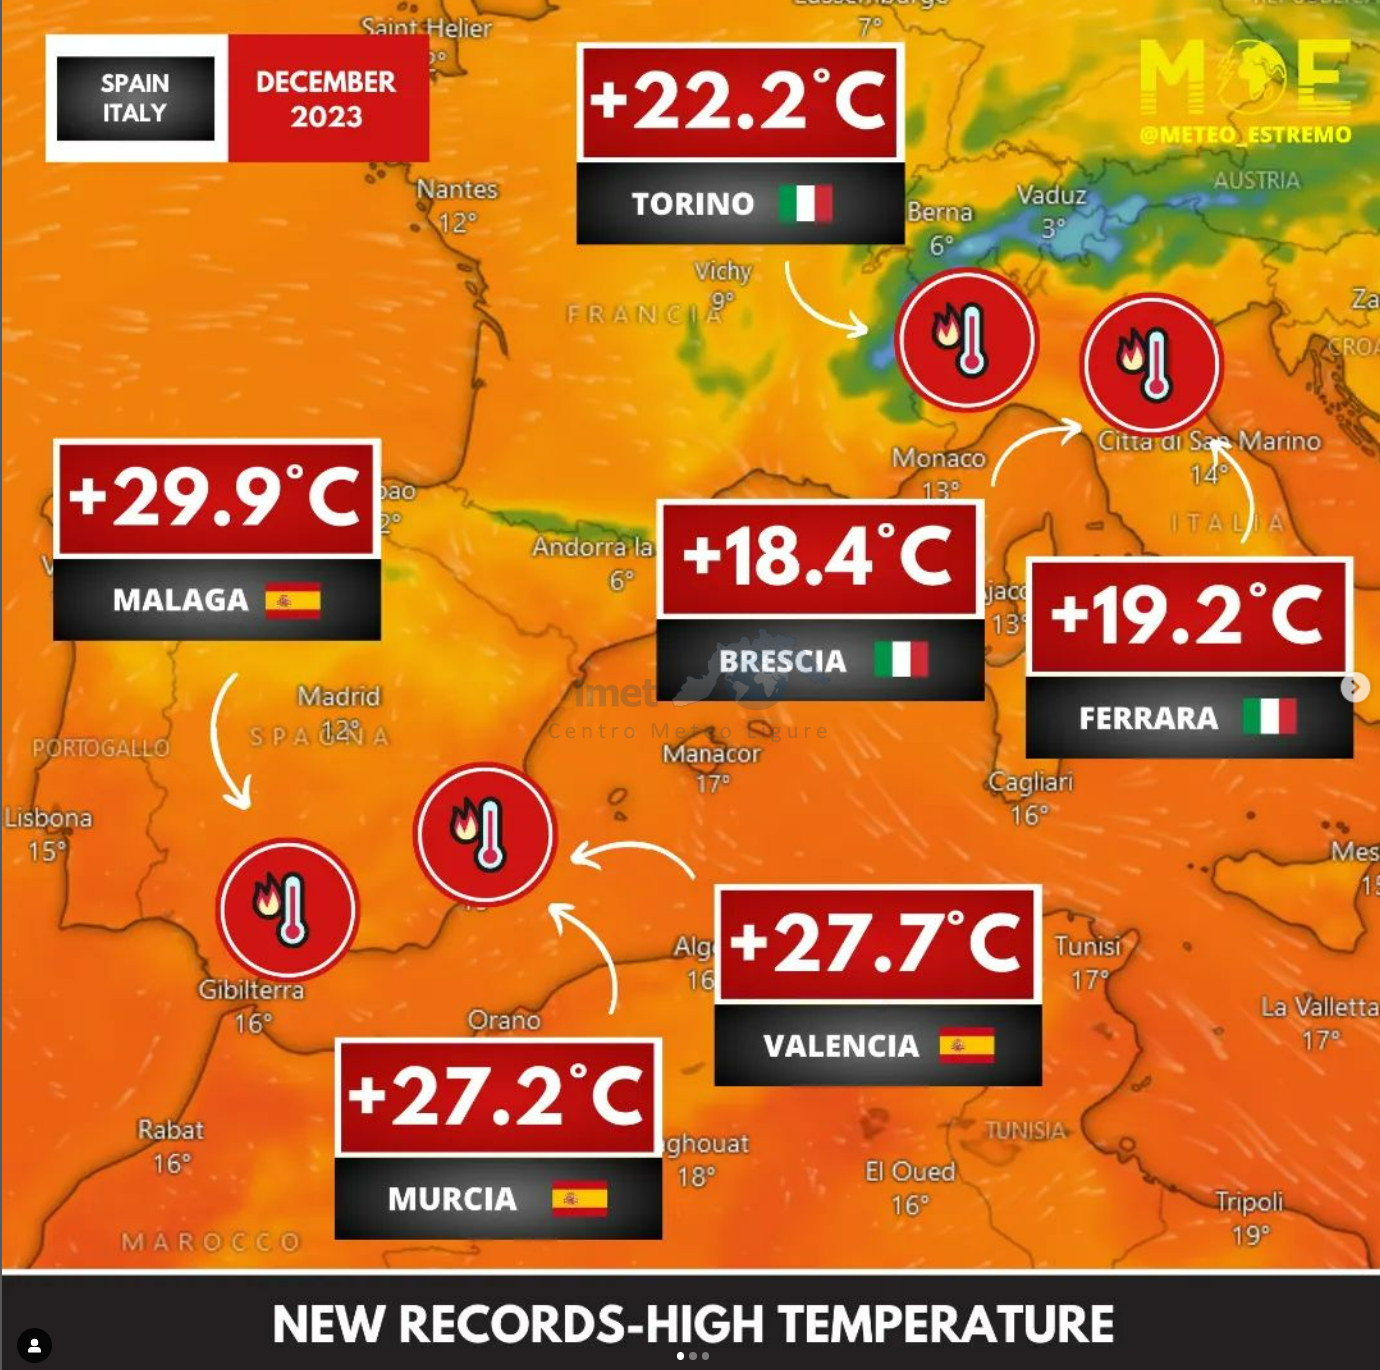 Saltati diversi record europei per il periodo di riferimento. Temperature ben oltre la media del periodo.